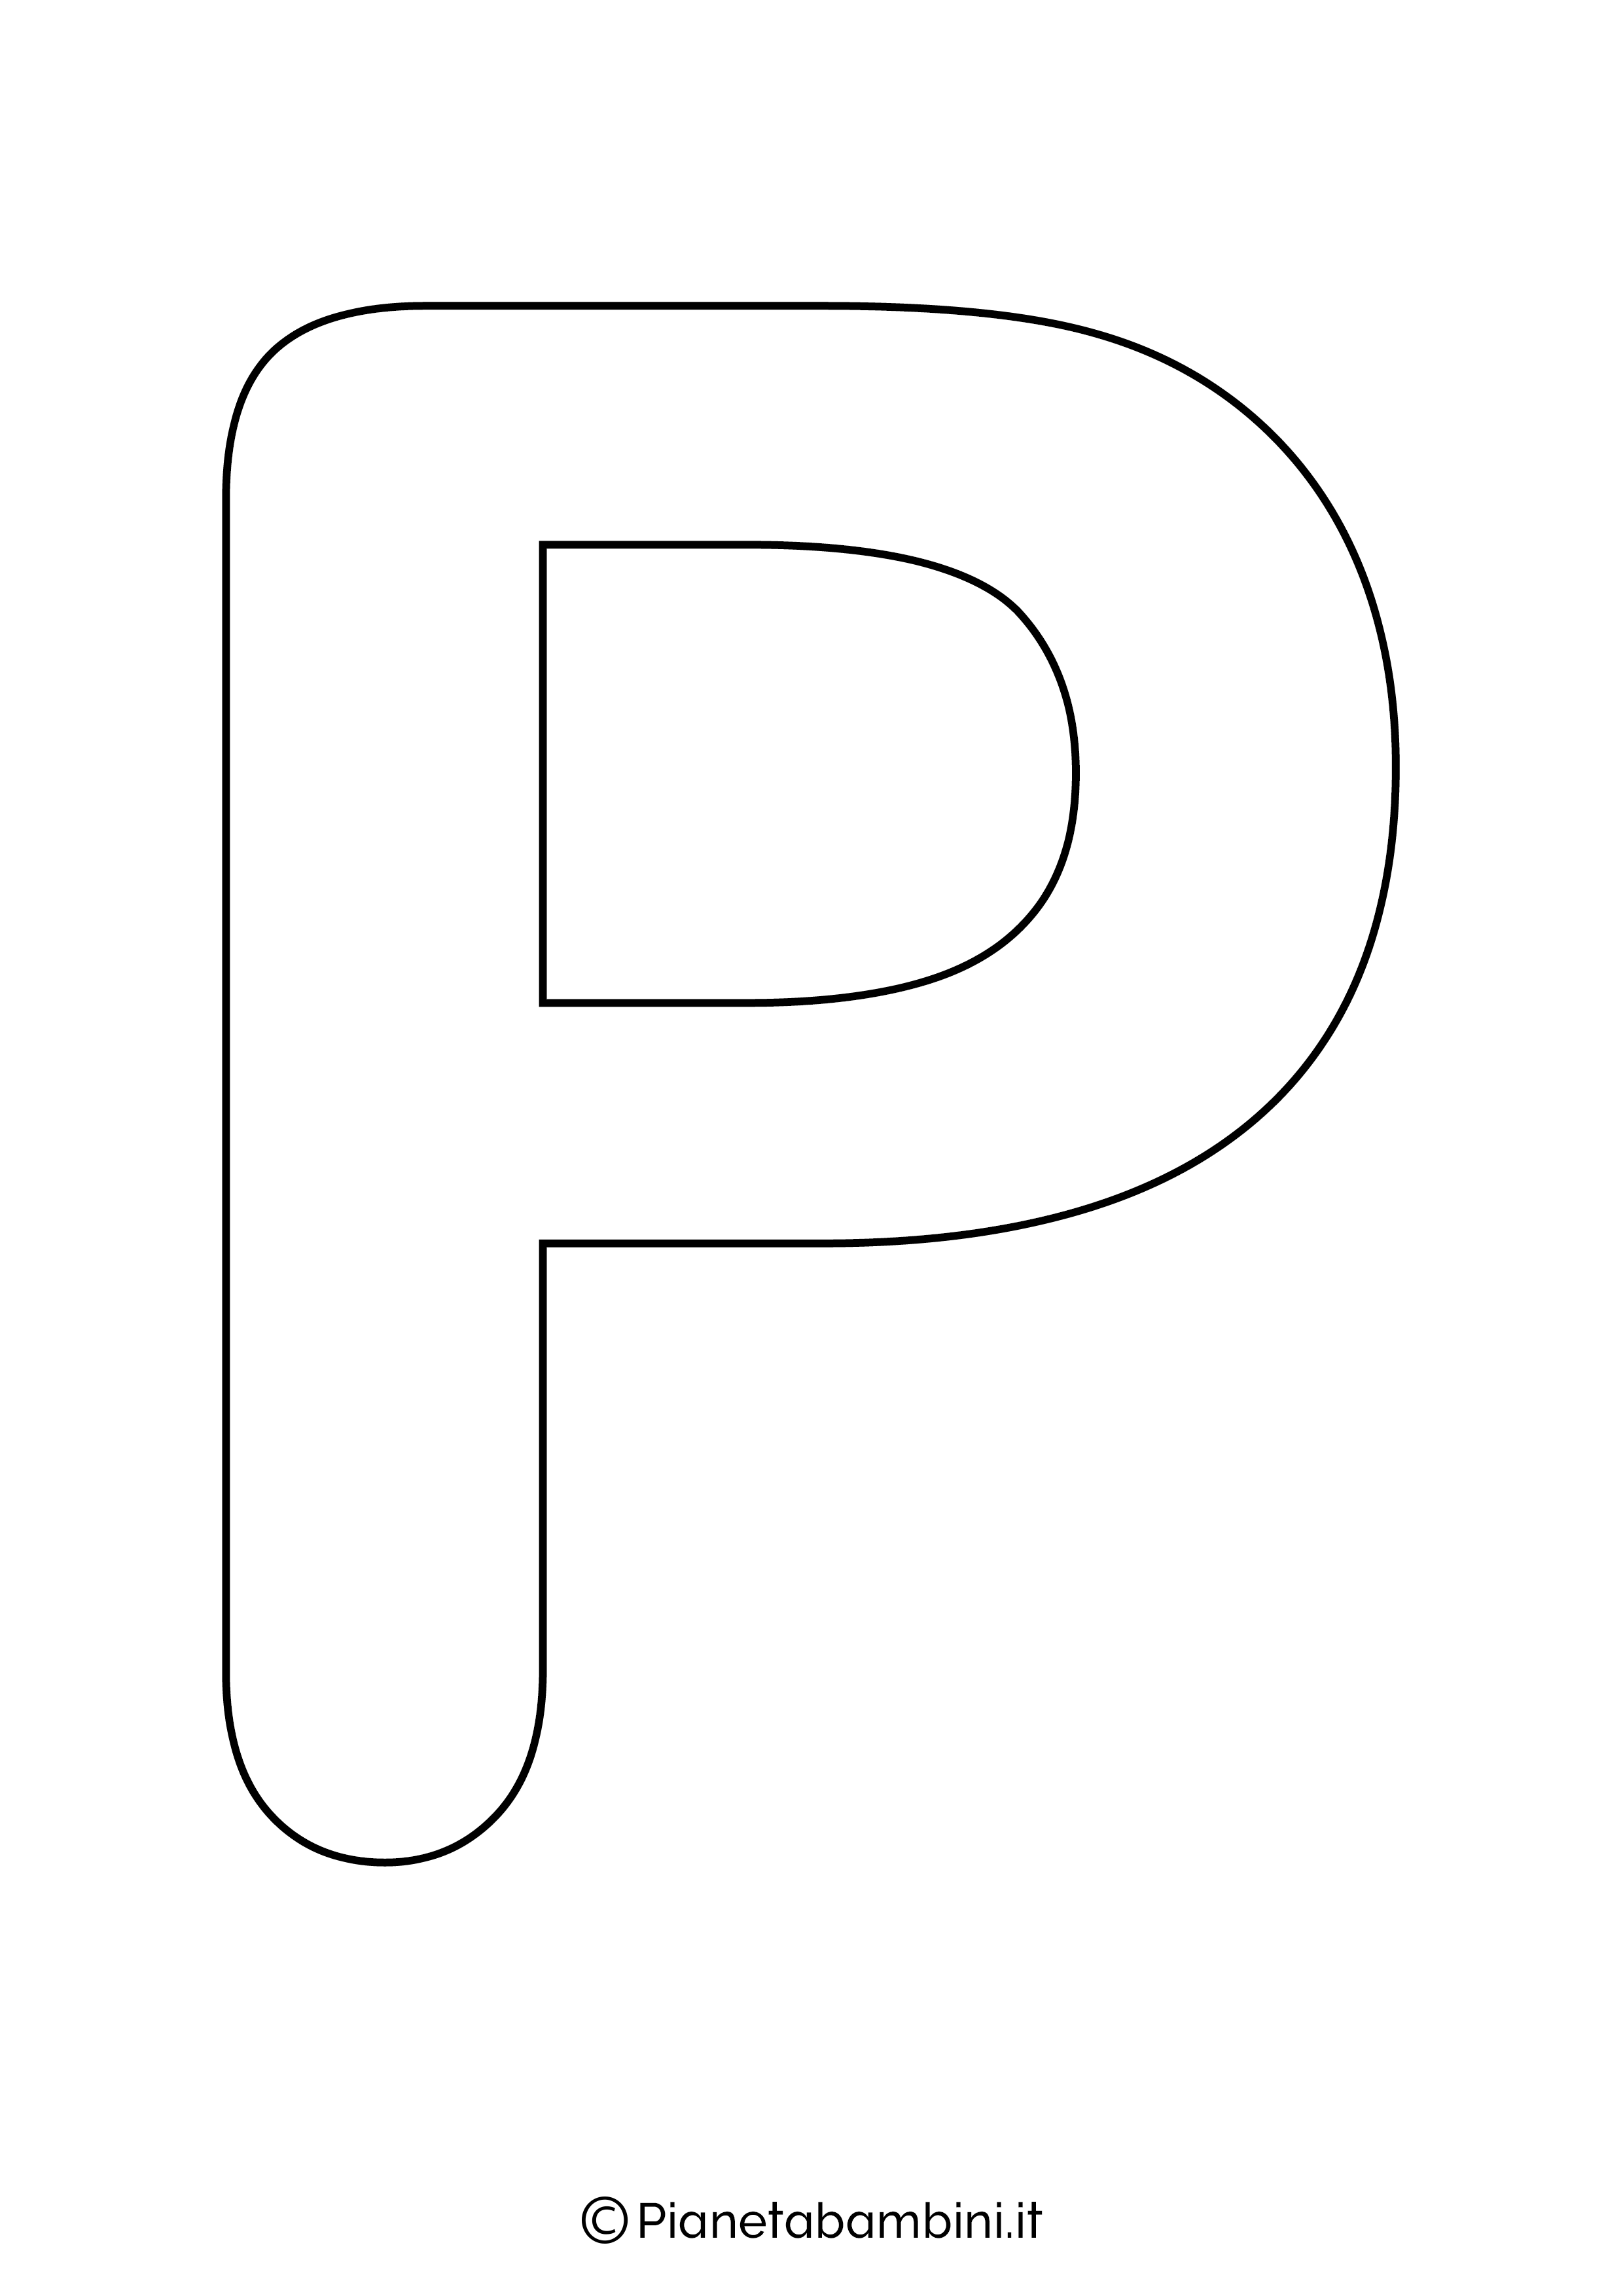 Lettera P maiuscola da stampare